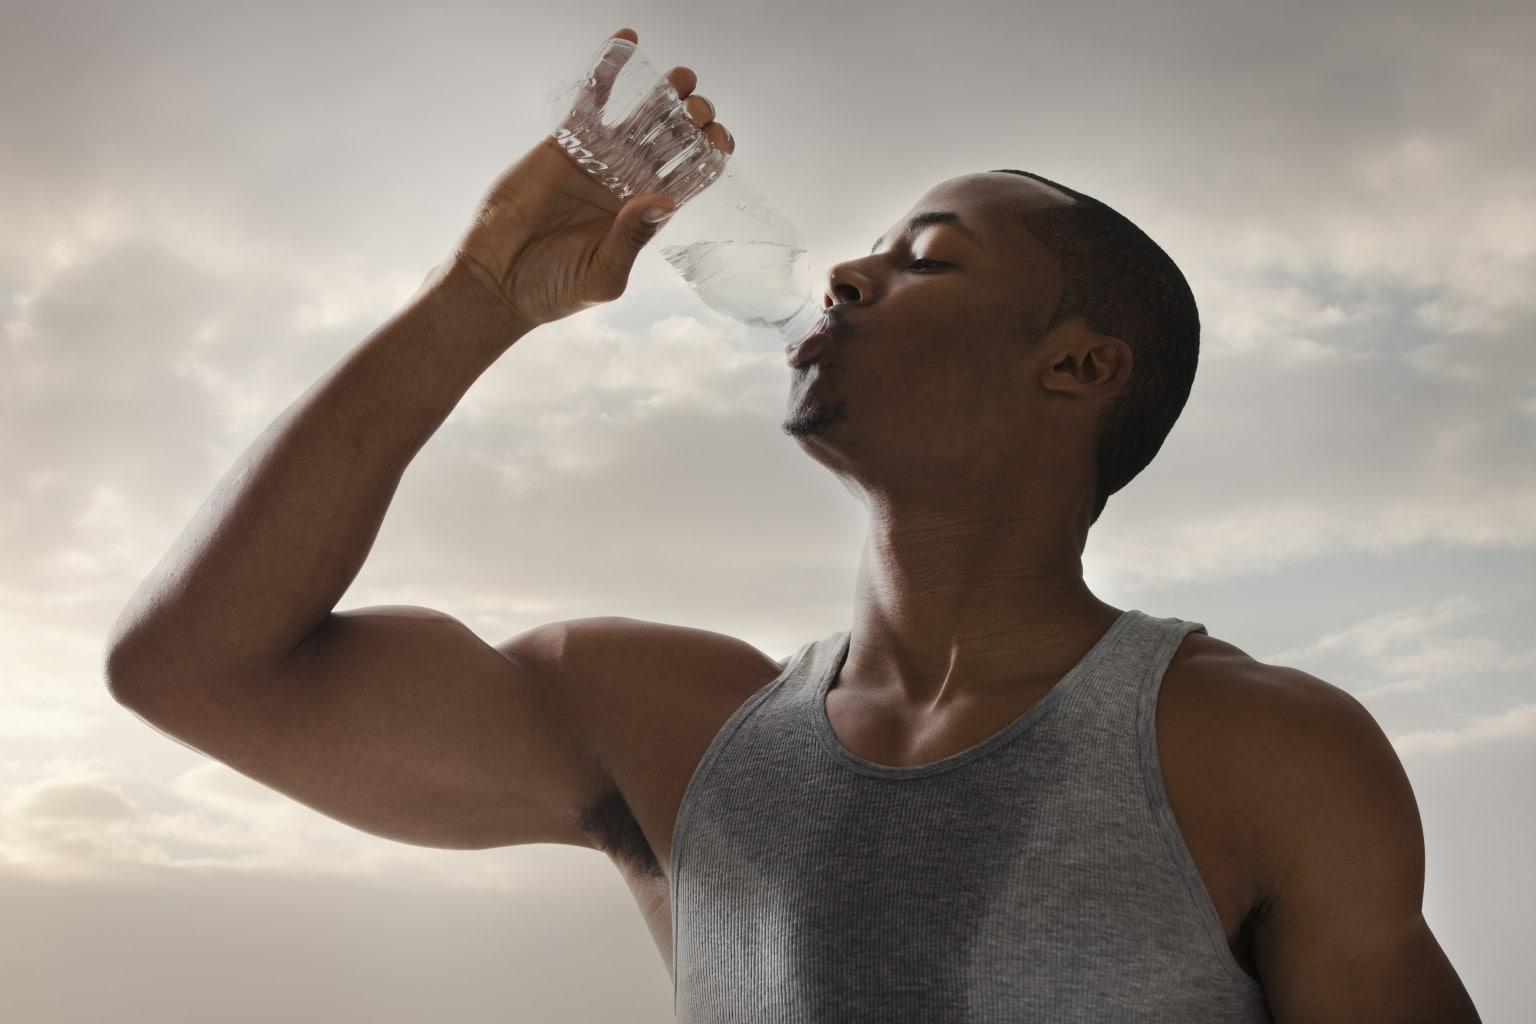 Капли пота на лбу. Вспотевший спортсмен. Спортсмен пьет воду. Парень пьет воду. Потоотделение в жару.